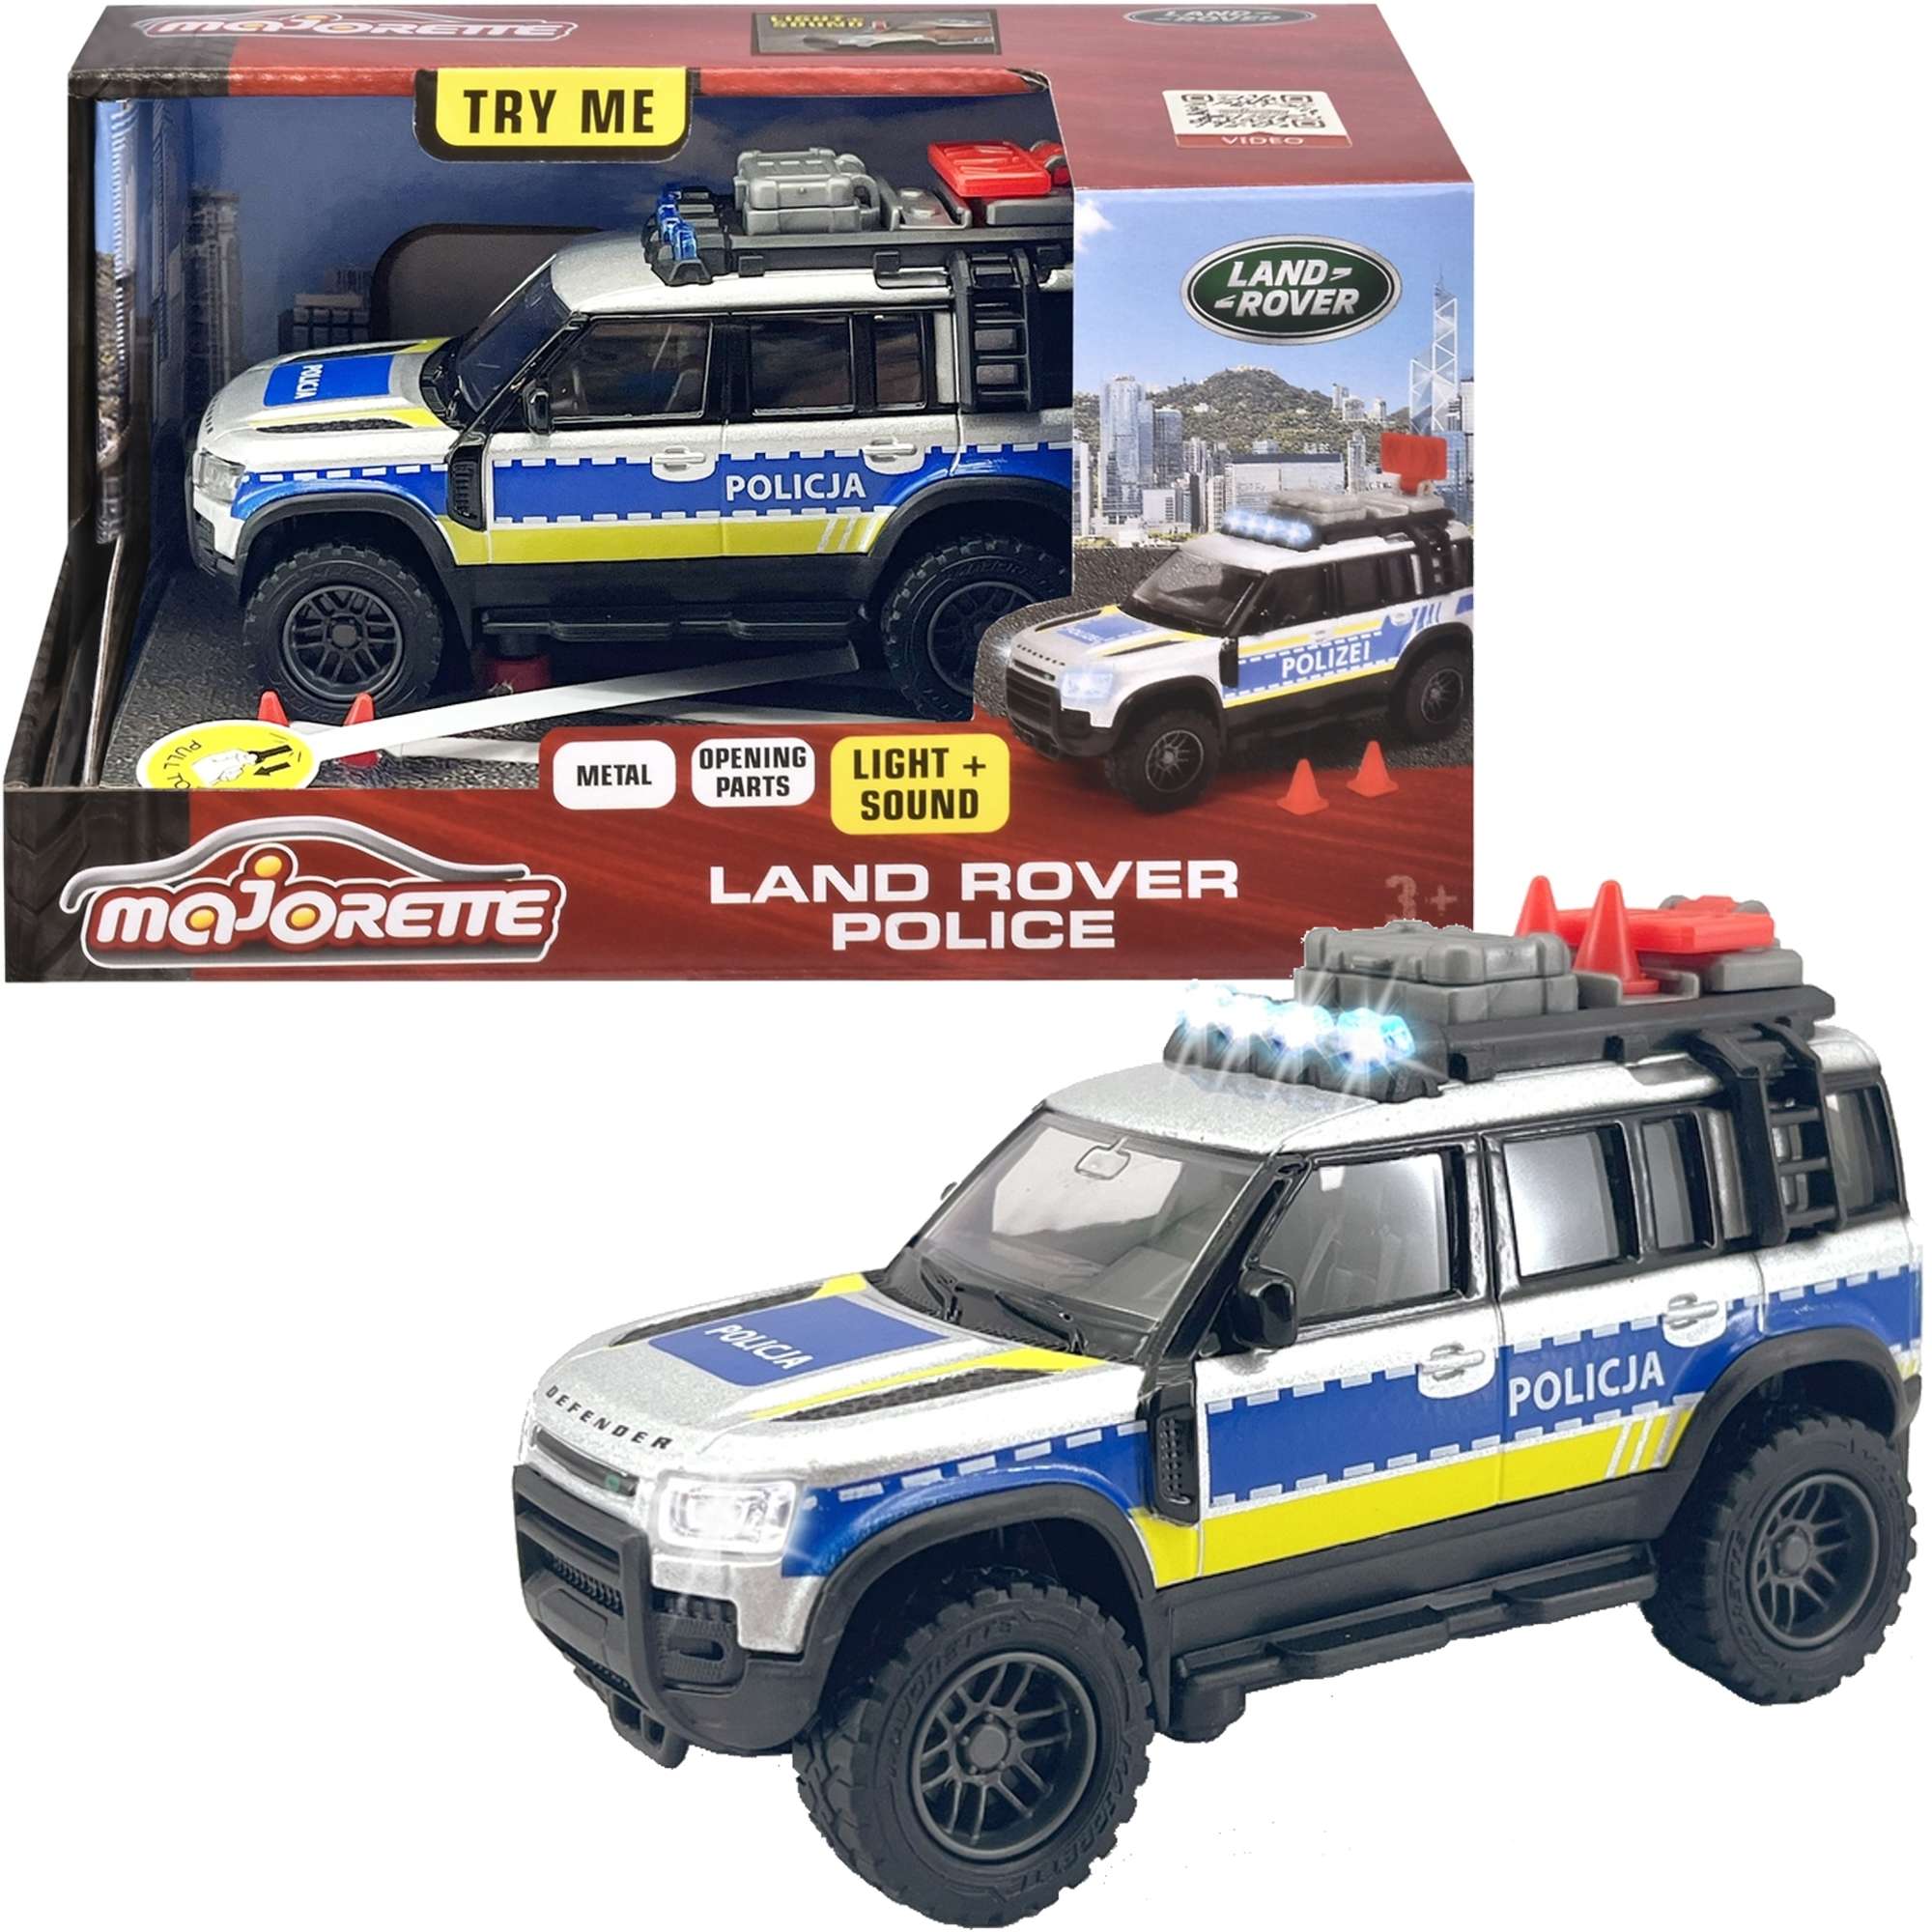 Pojazd Policja Land Rover wiato/dwik